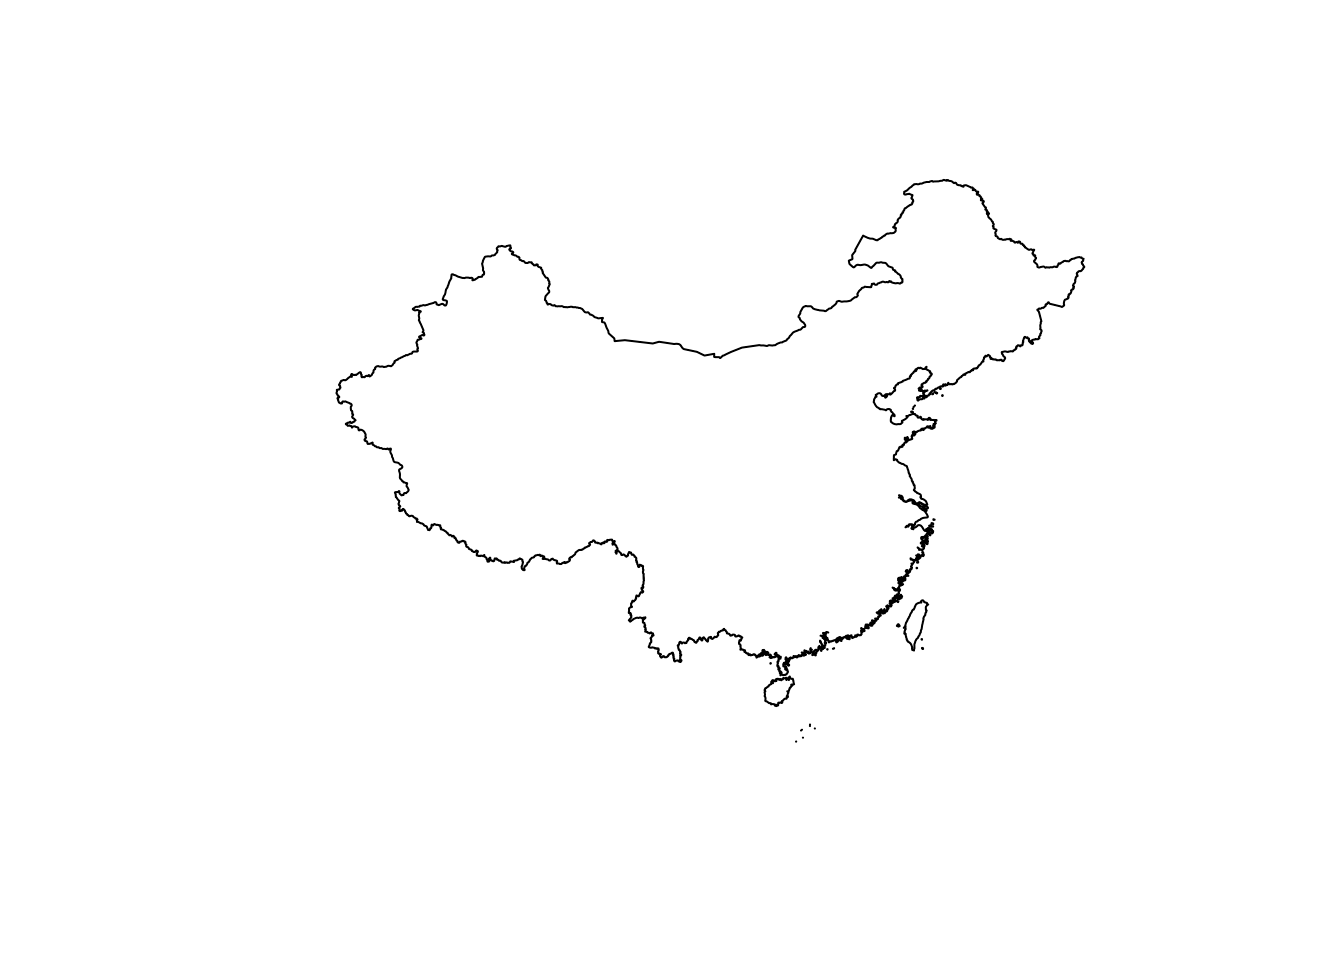 国家地理网站提供的中国地图数据